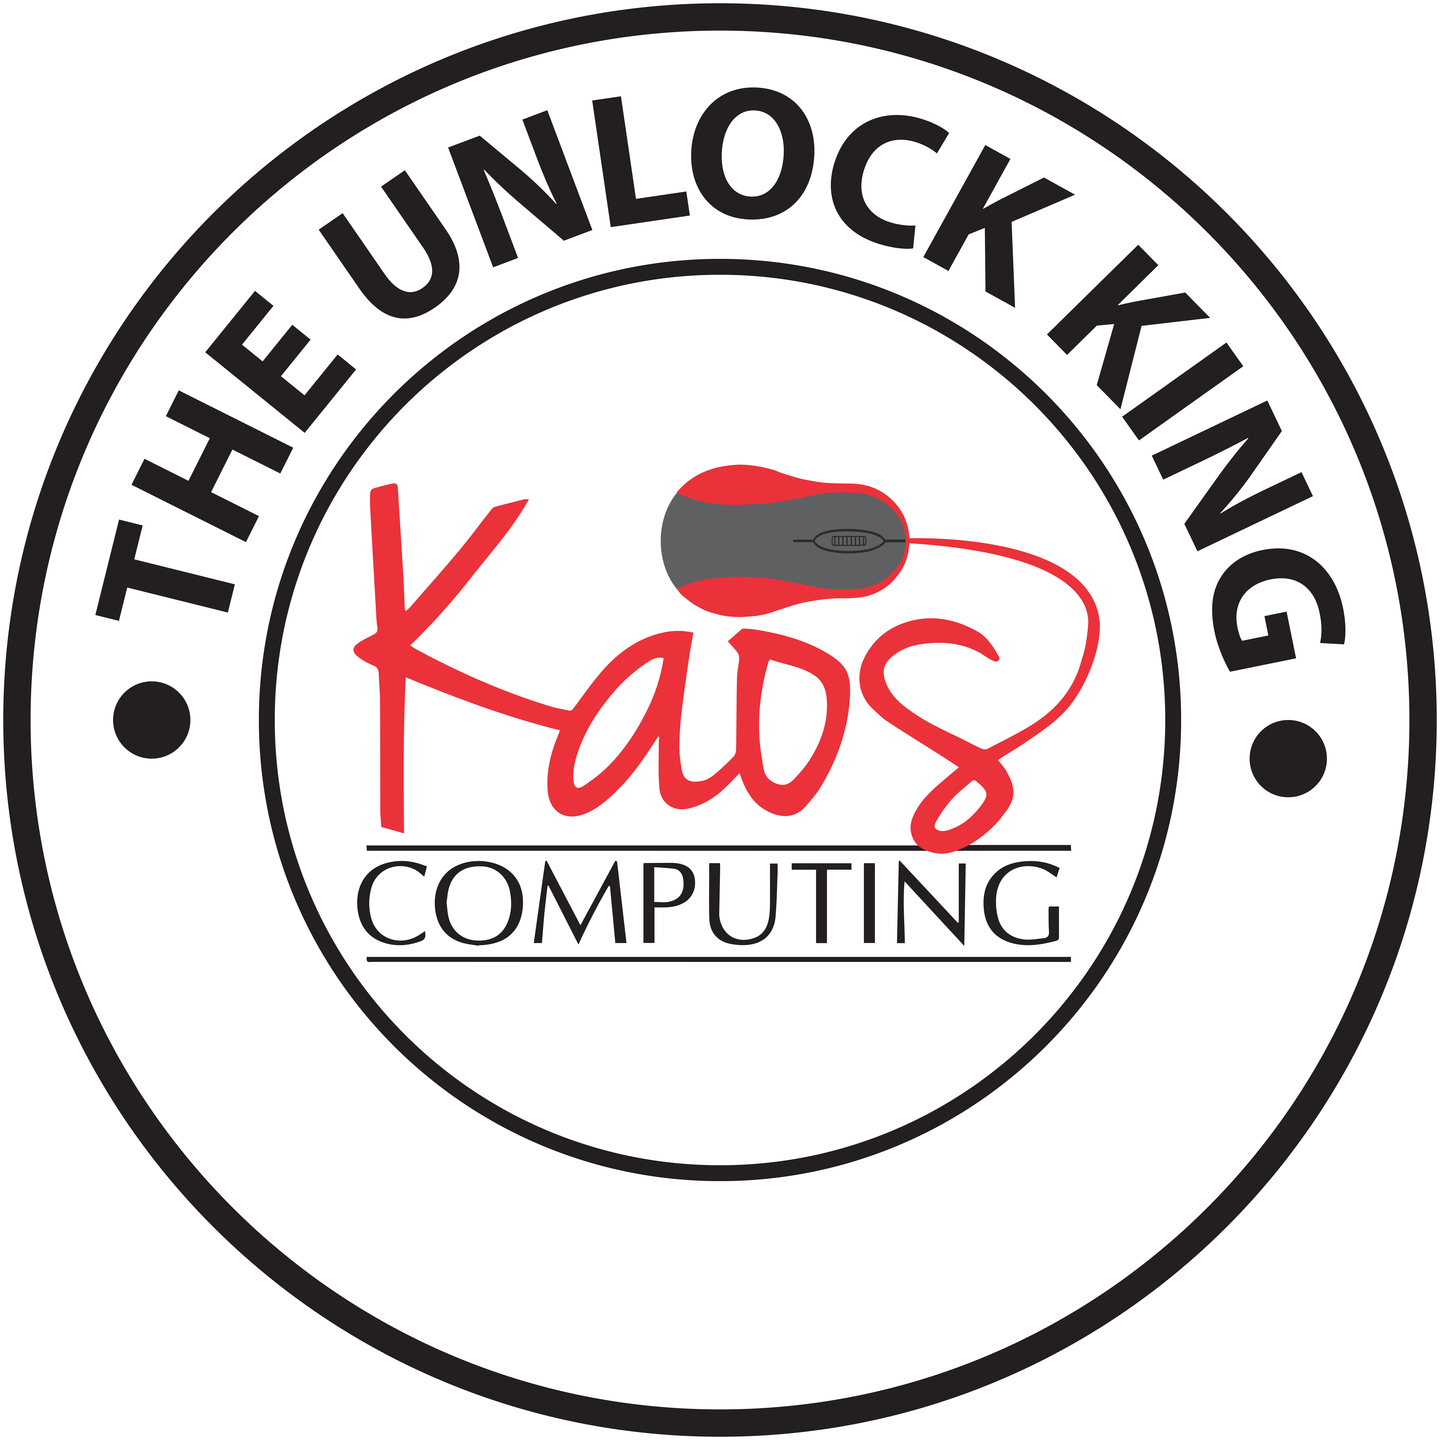 Company Logo For Kaos Computing'